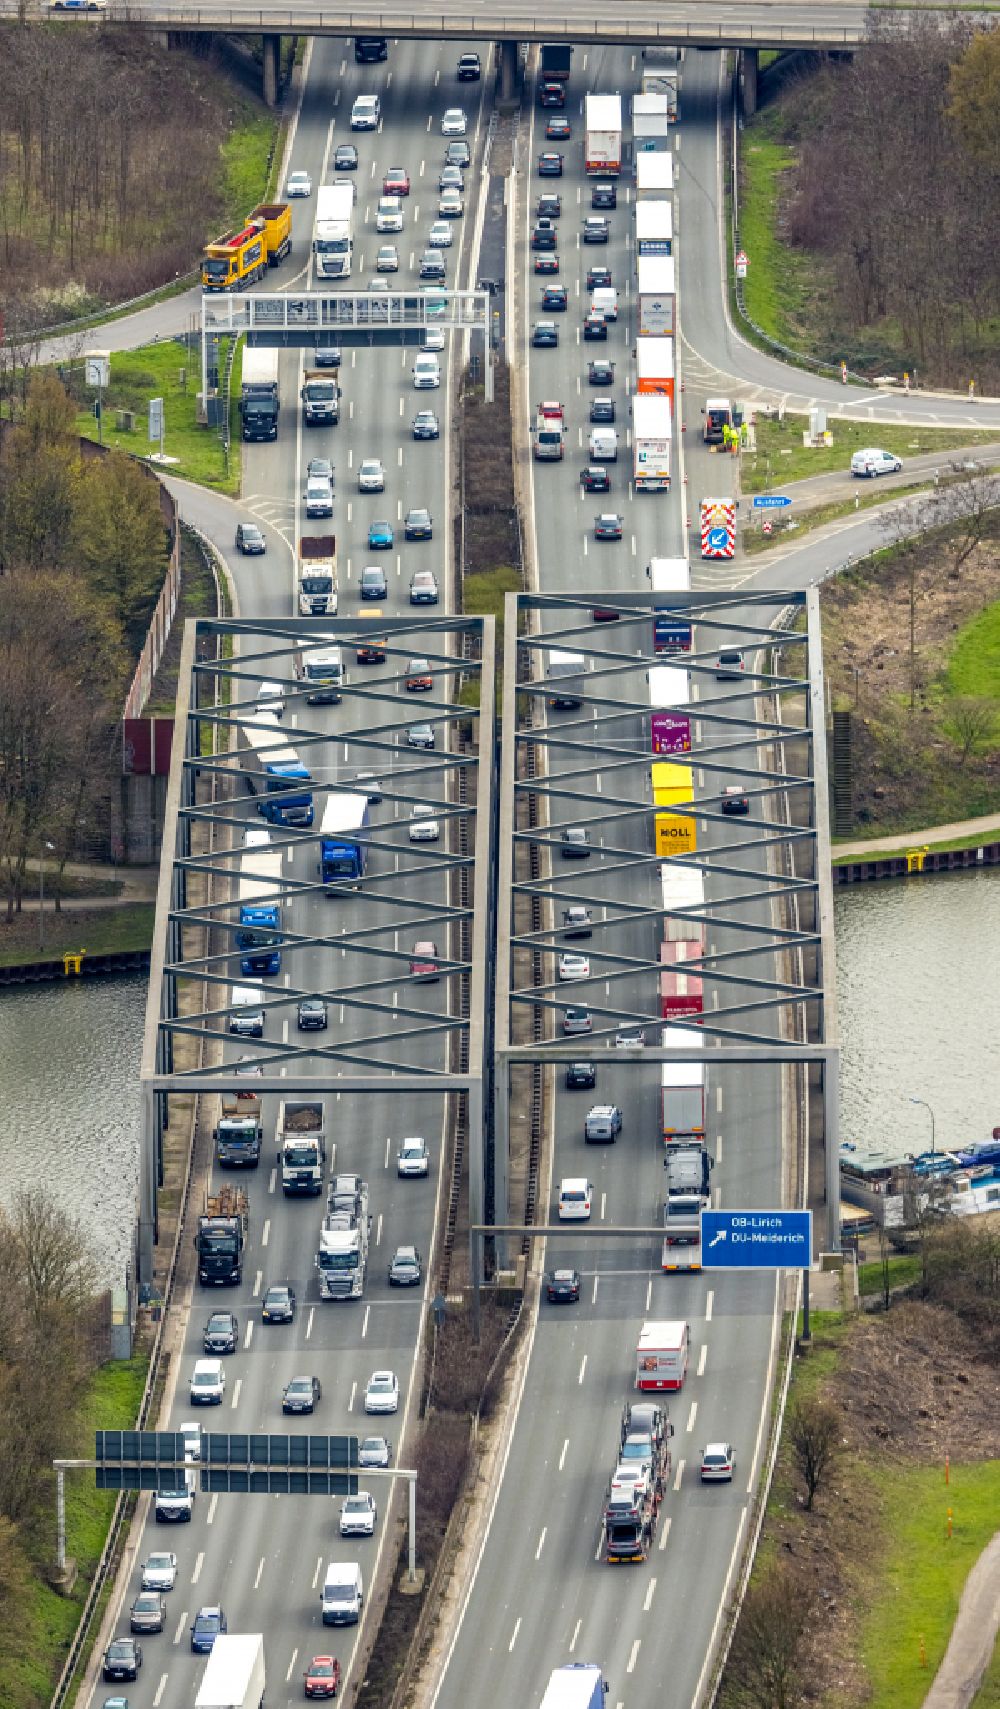 Luftbild Duisburg - Autobahn- Stau im Streckenverlauf der BAB A59 in Duisburg im Bundesland Nordrhein-Westfalen, Deutschland